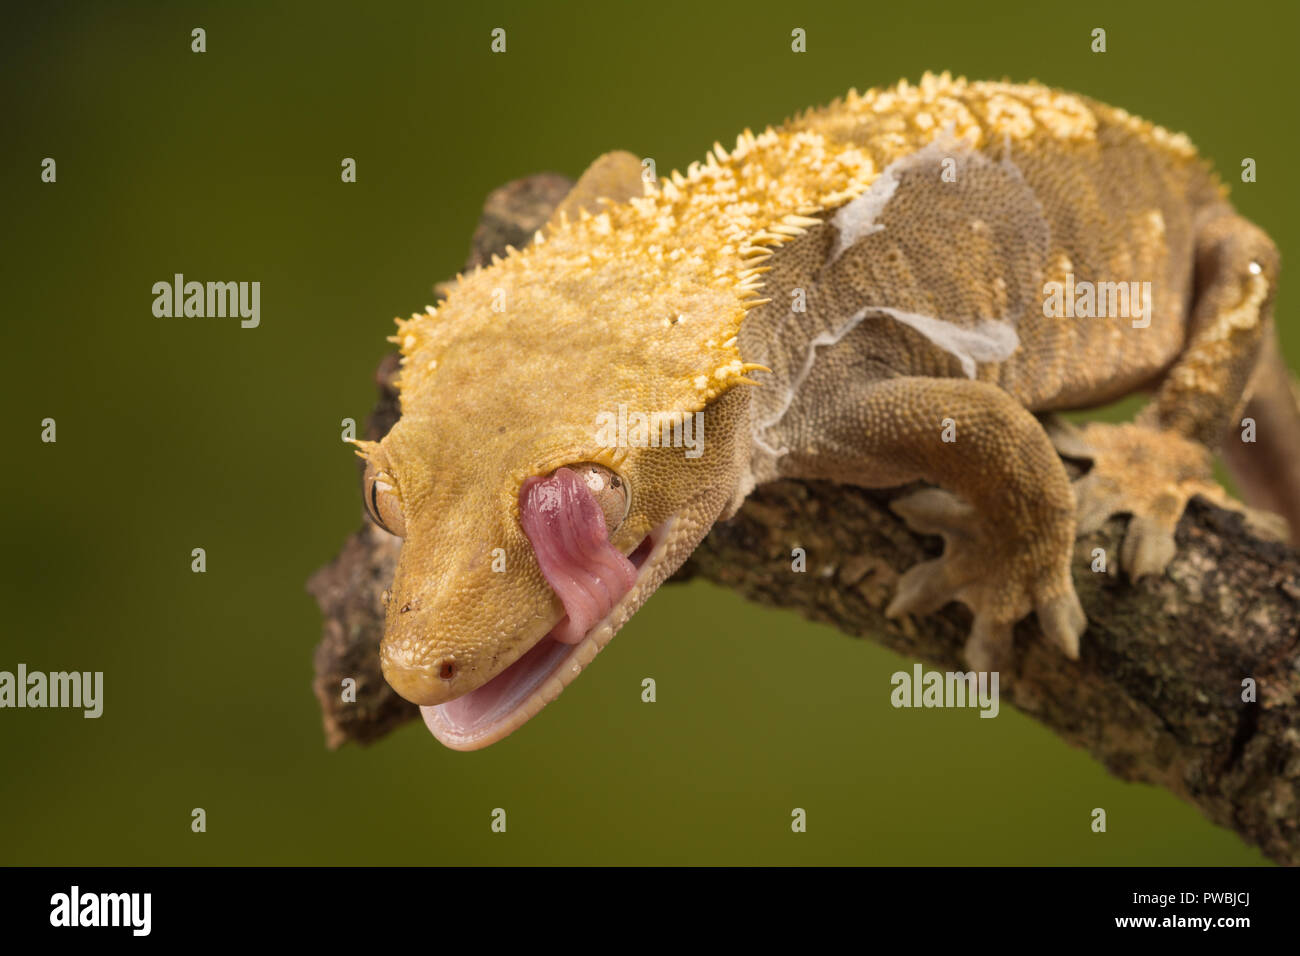 Crested Gecko (Correlophus wimpertierchen), eine Pflanzenart aus der Gattung der Gecko native zum südlichen Neukaledonien, mit seiner Zunge sein Auge zu reinigen. Tier Humor, Humor Stockfoto